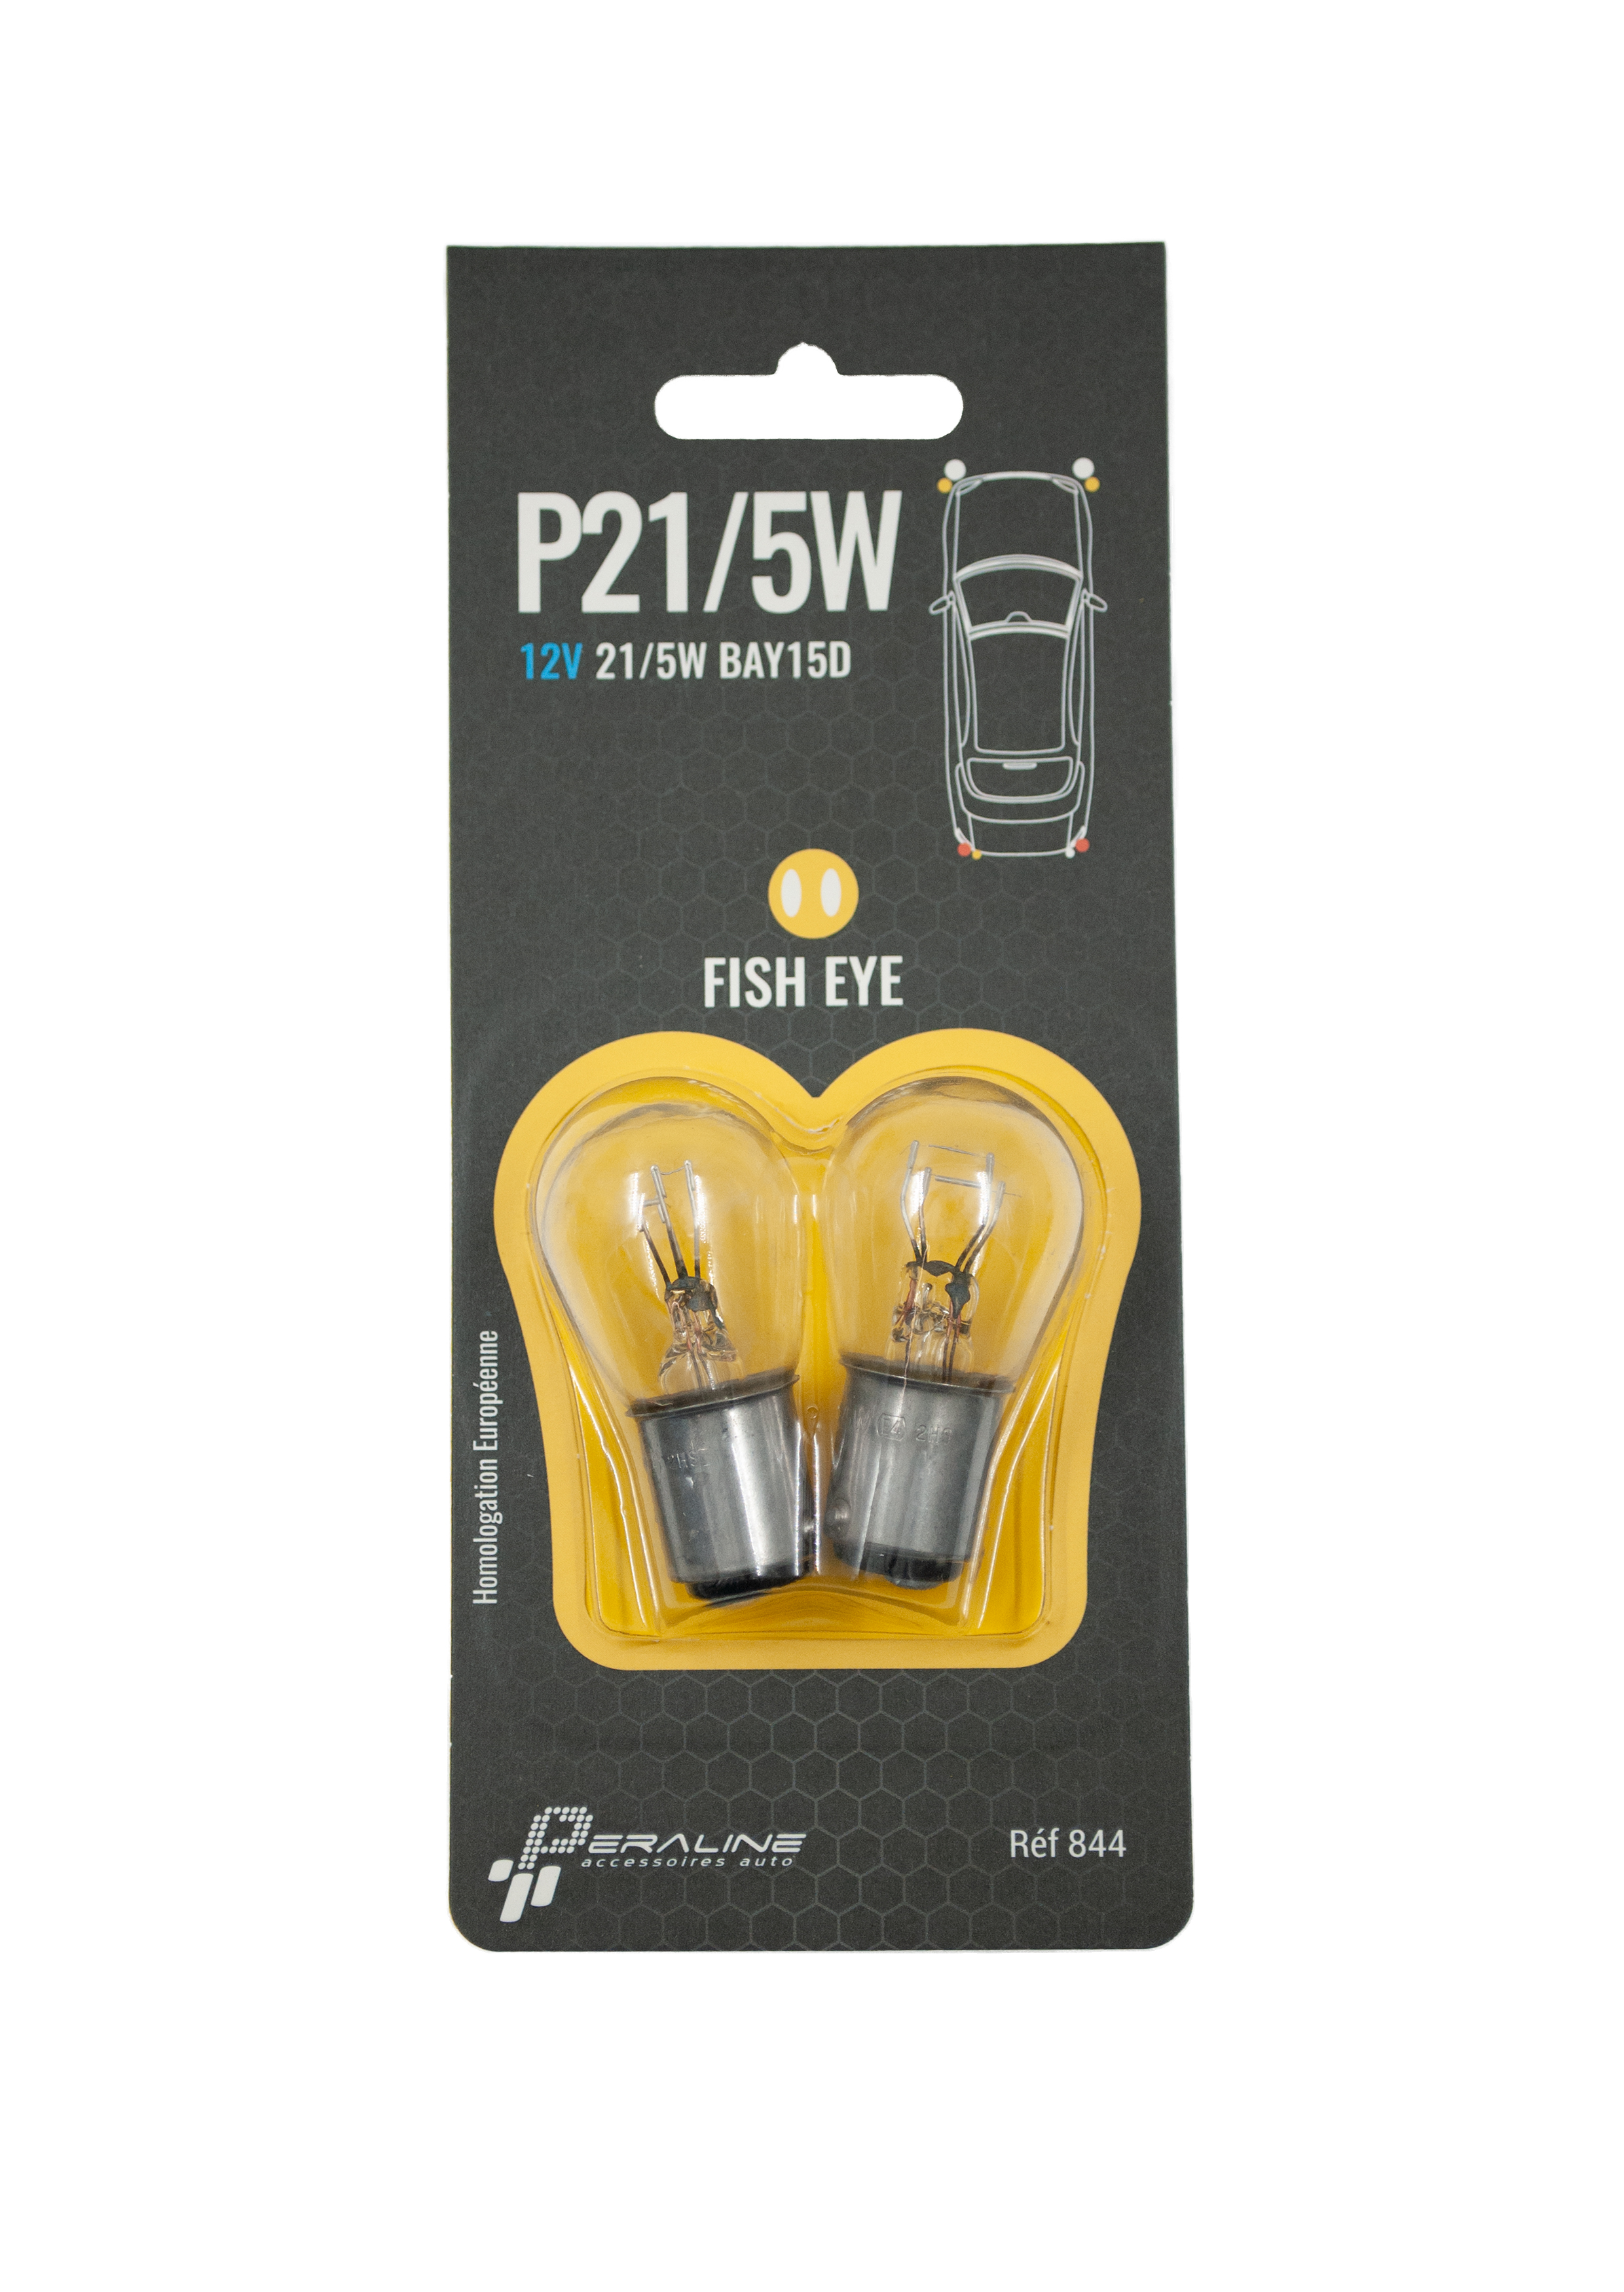 Accessoire auto : Lot de 2 ampoules bifil P21/5W 12V pas cher